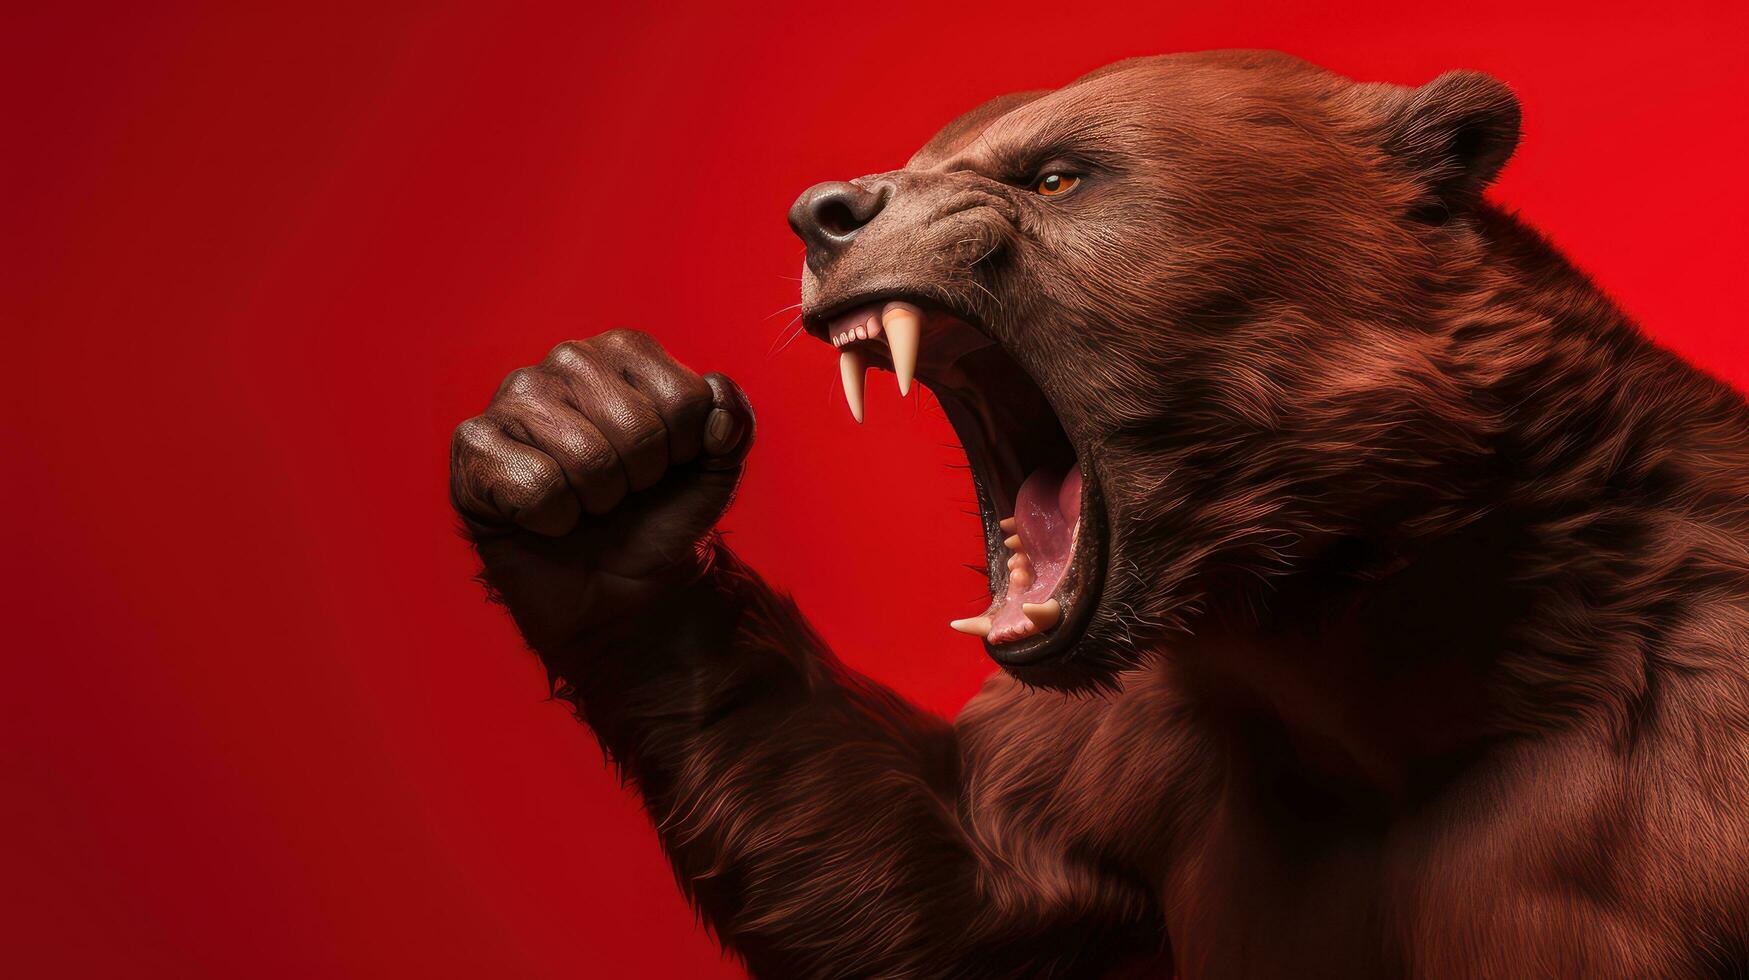 ai gerado músculo Urso gesto punho bombear, Urso mostrando brigando pose em vermelho fundo, grosseiro divergência dentro estoque mercado e criptomoeda negociação foto